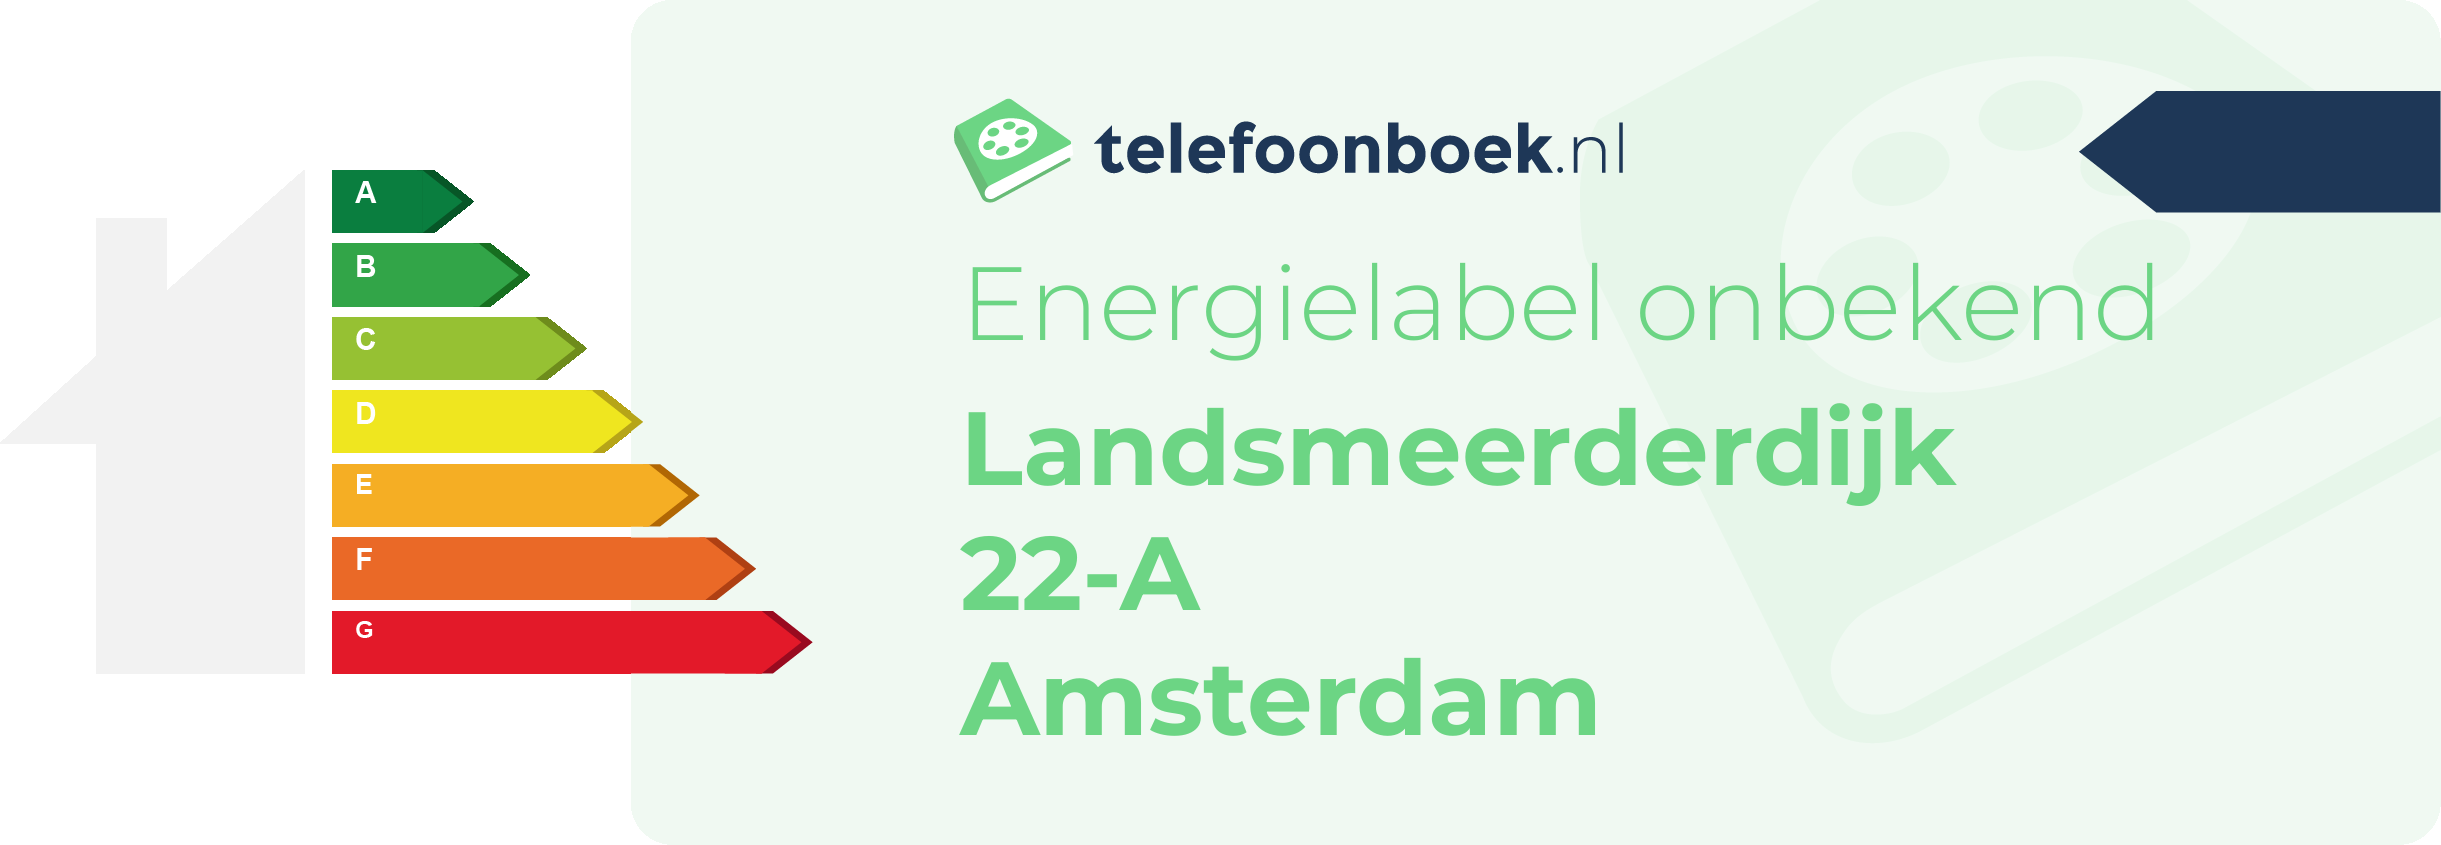 Energielabel Landsmeerderdijk 22-A Amsterdam